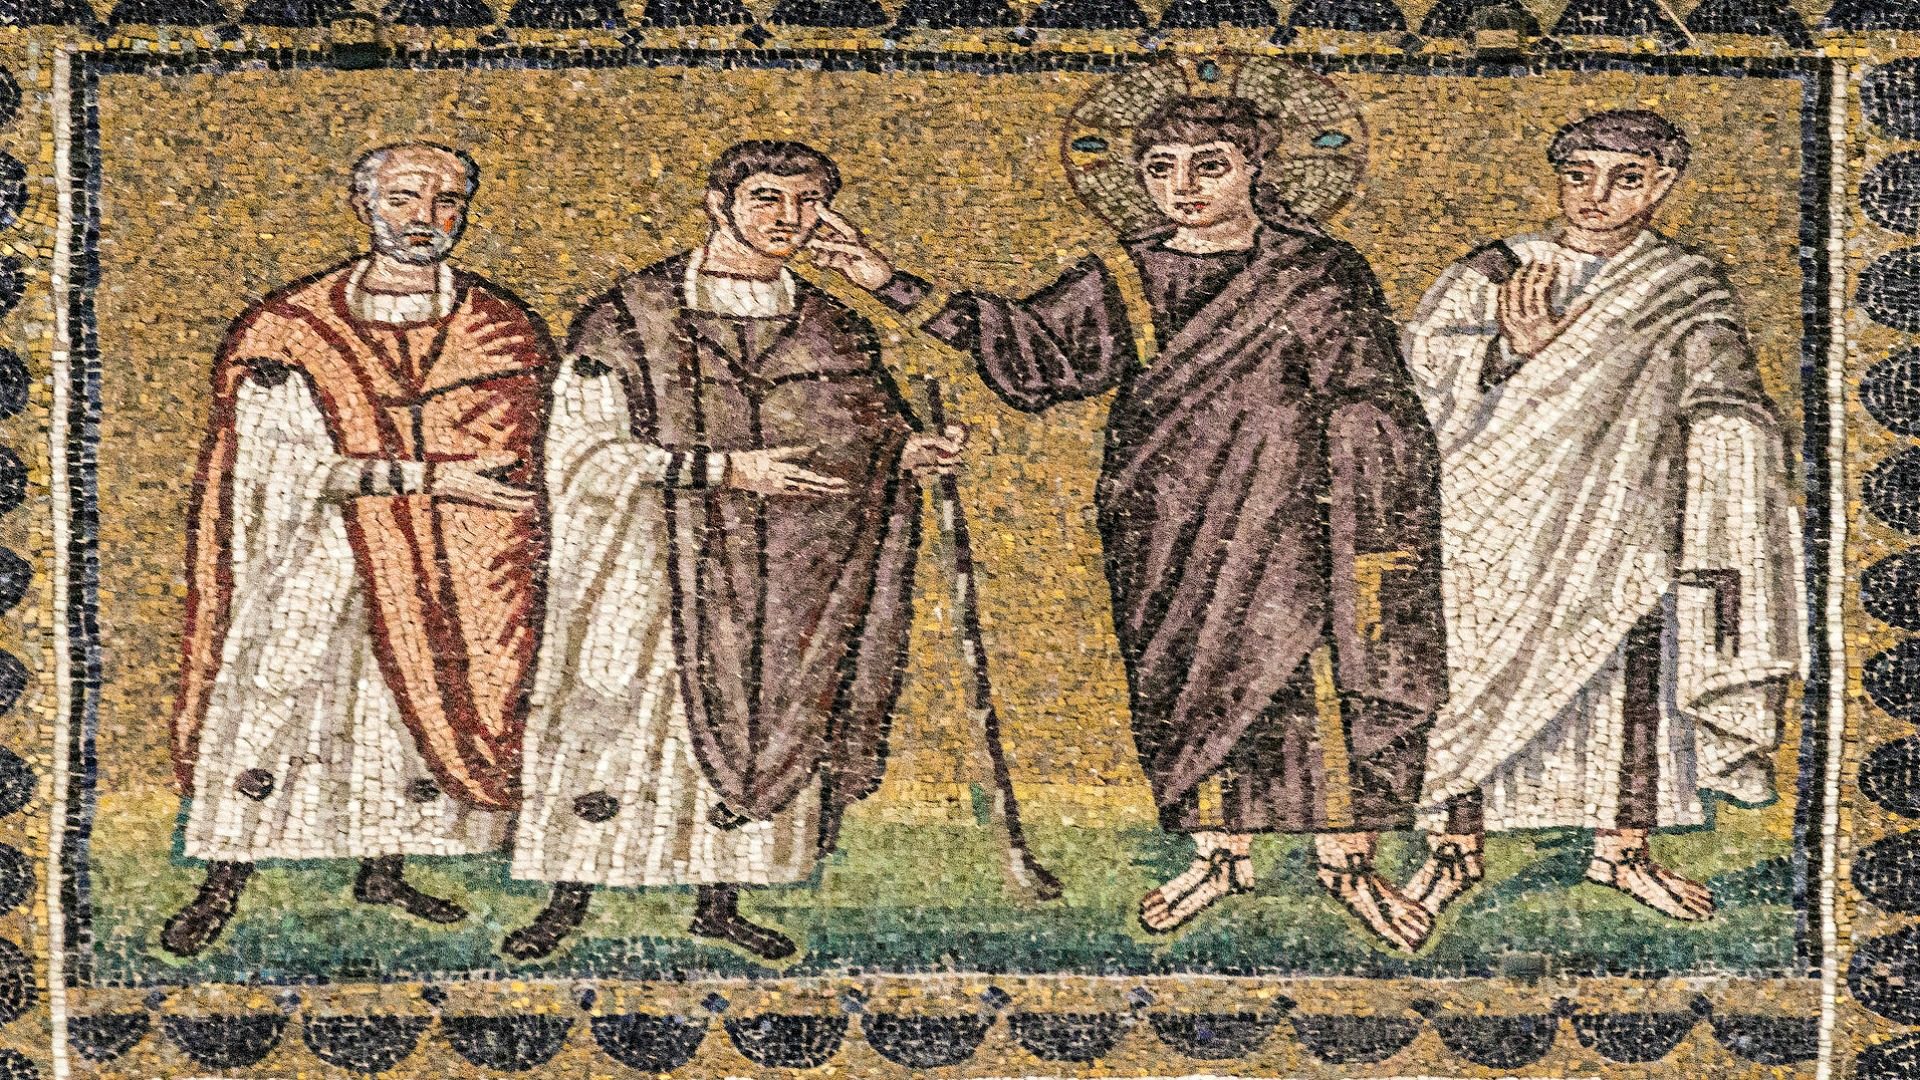 Jésus guérit un aveugle. Mosaïque du 5e siècle. Basilique Saint-Apollinaire-le-Neuf, Ravenne (Italie) | © Flickr/Lawrence OP/CC BY-NC-ND 2.0